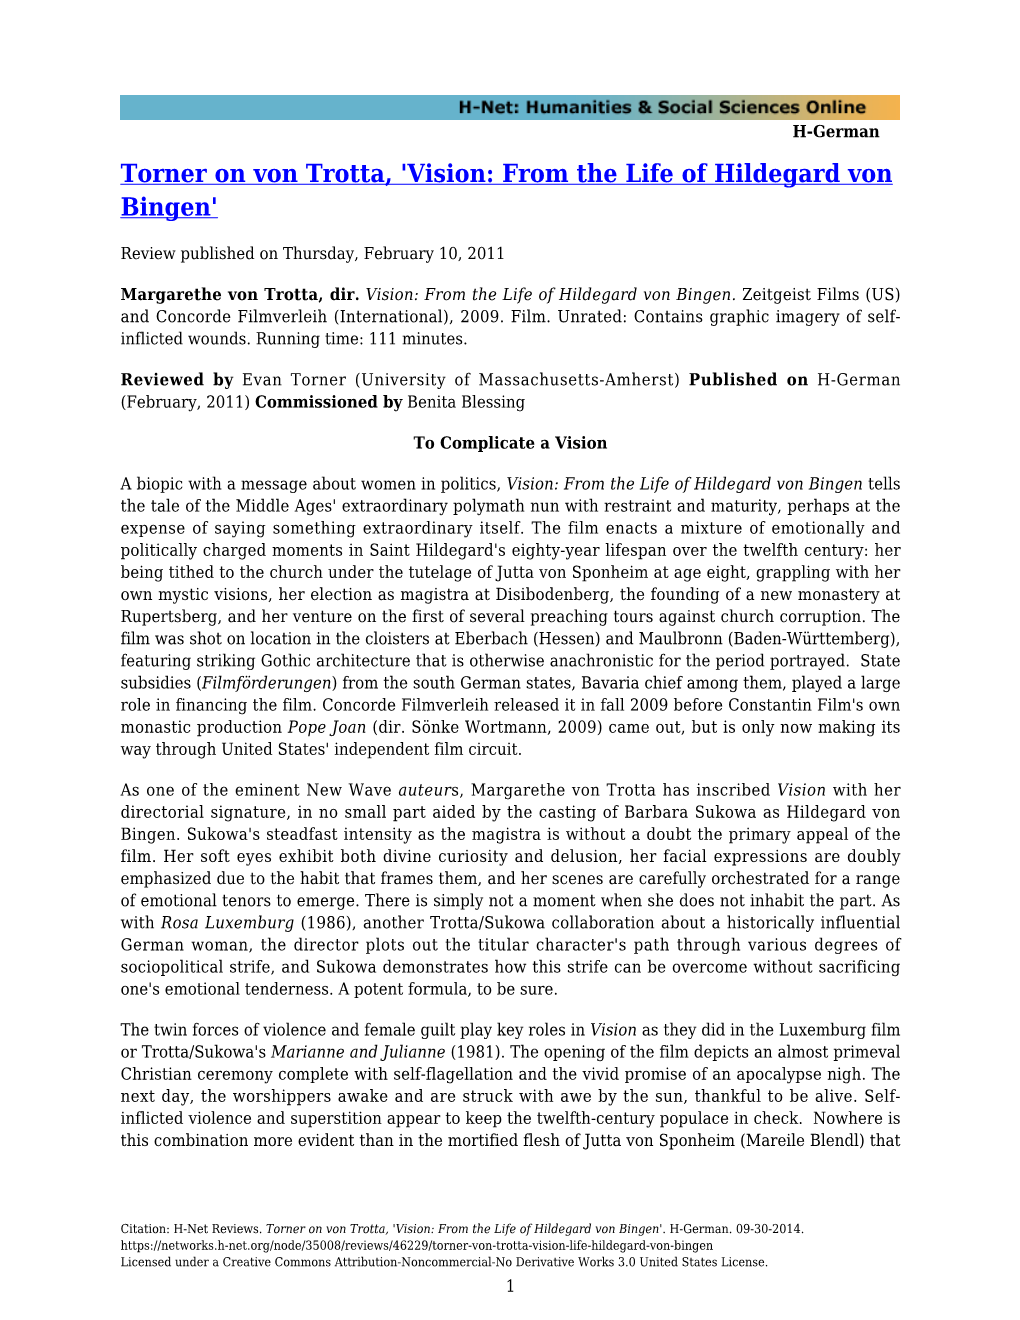 Torner on Von Trotta, 'Vision: from the Life of Hildegard Von Bingen'